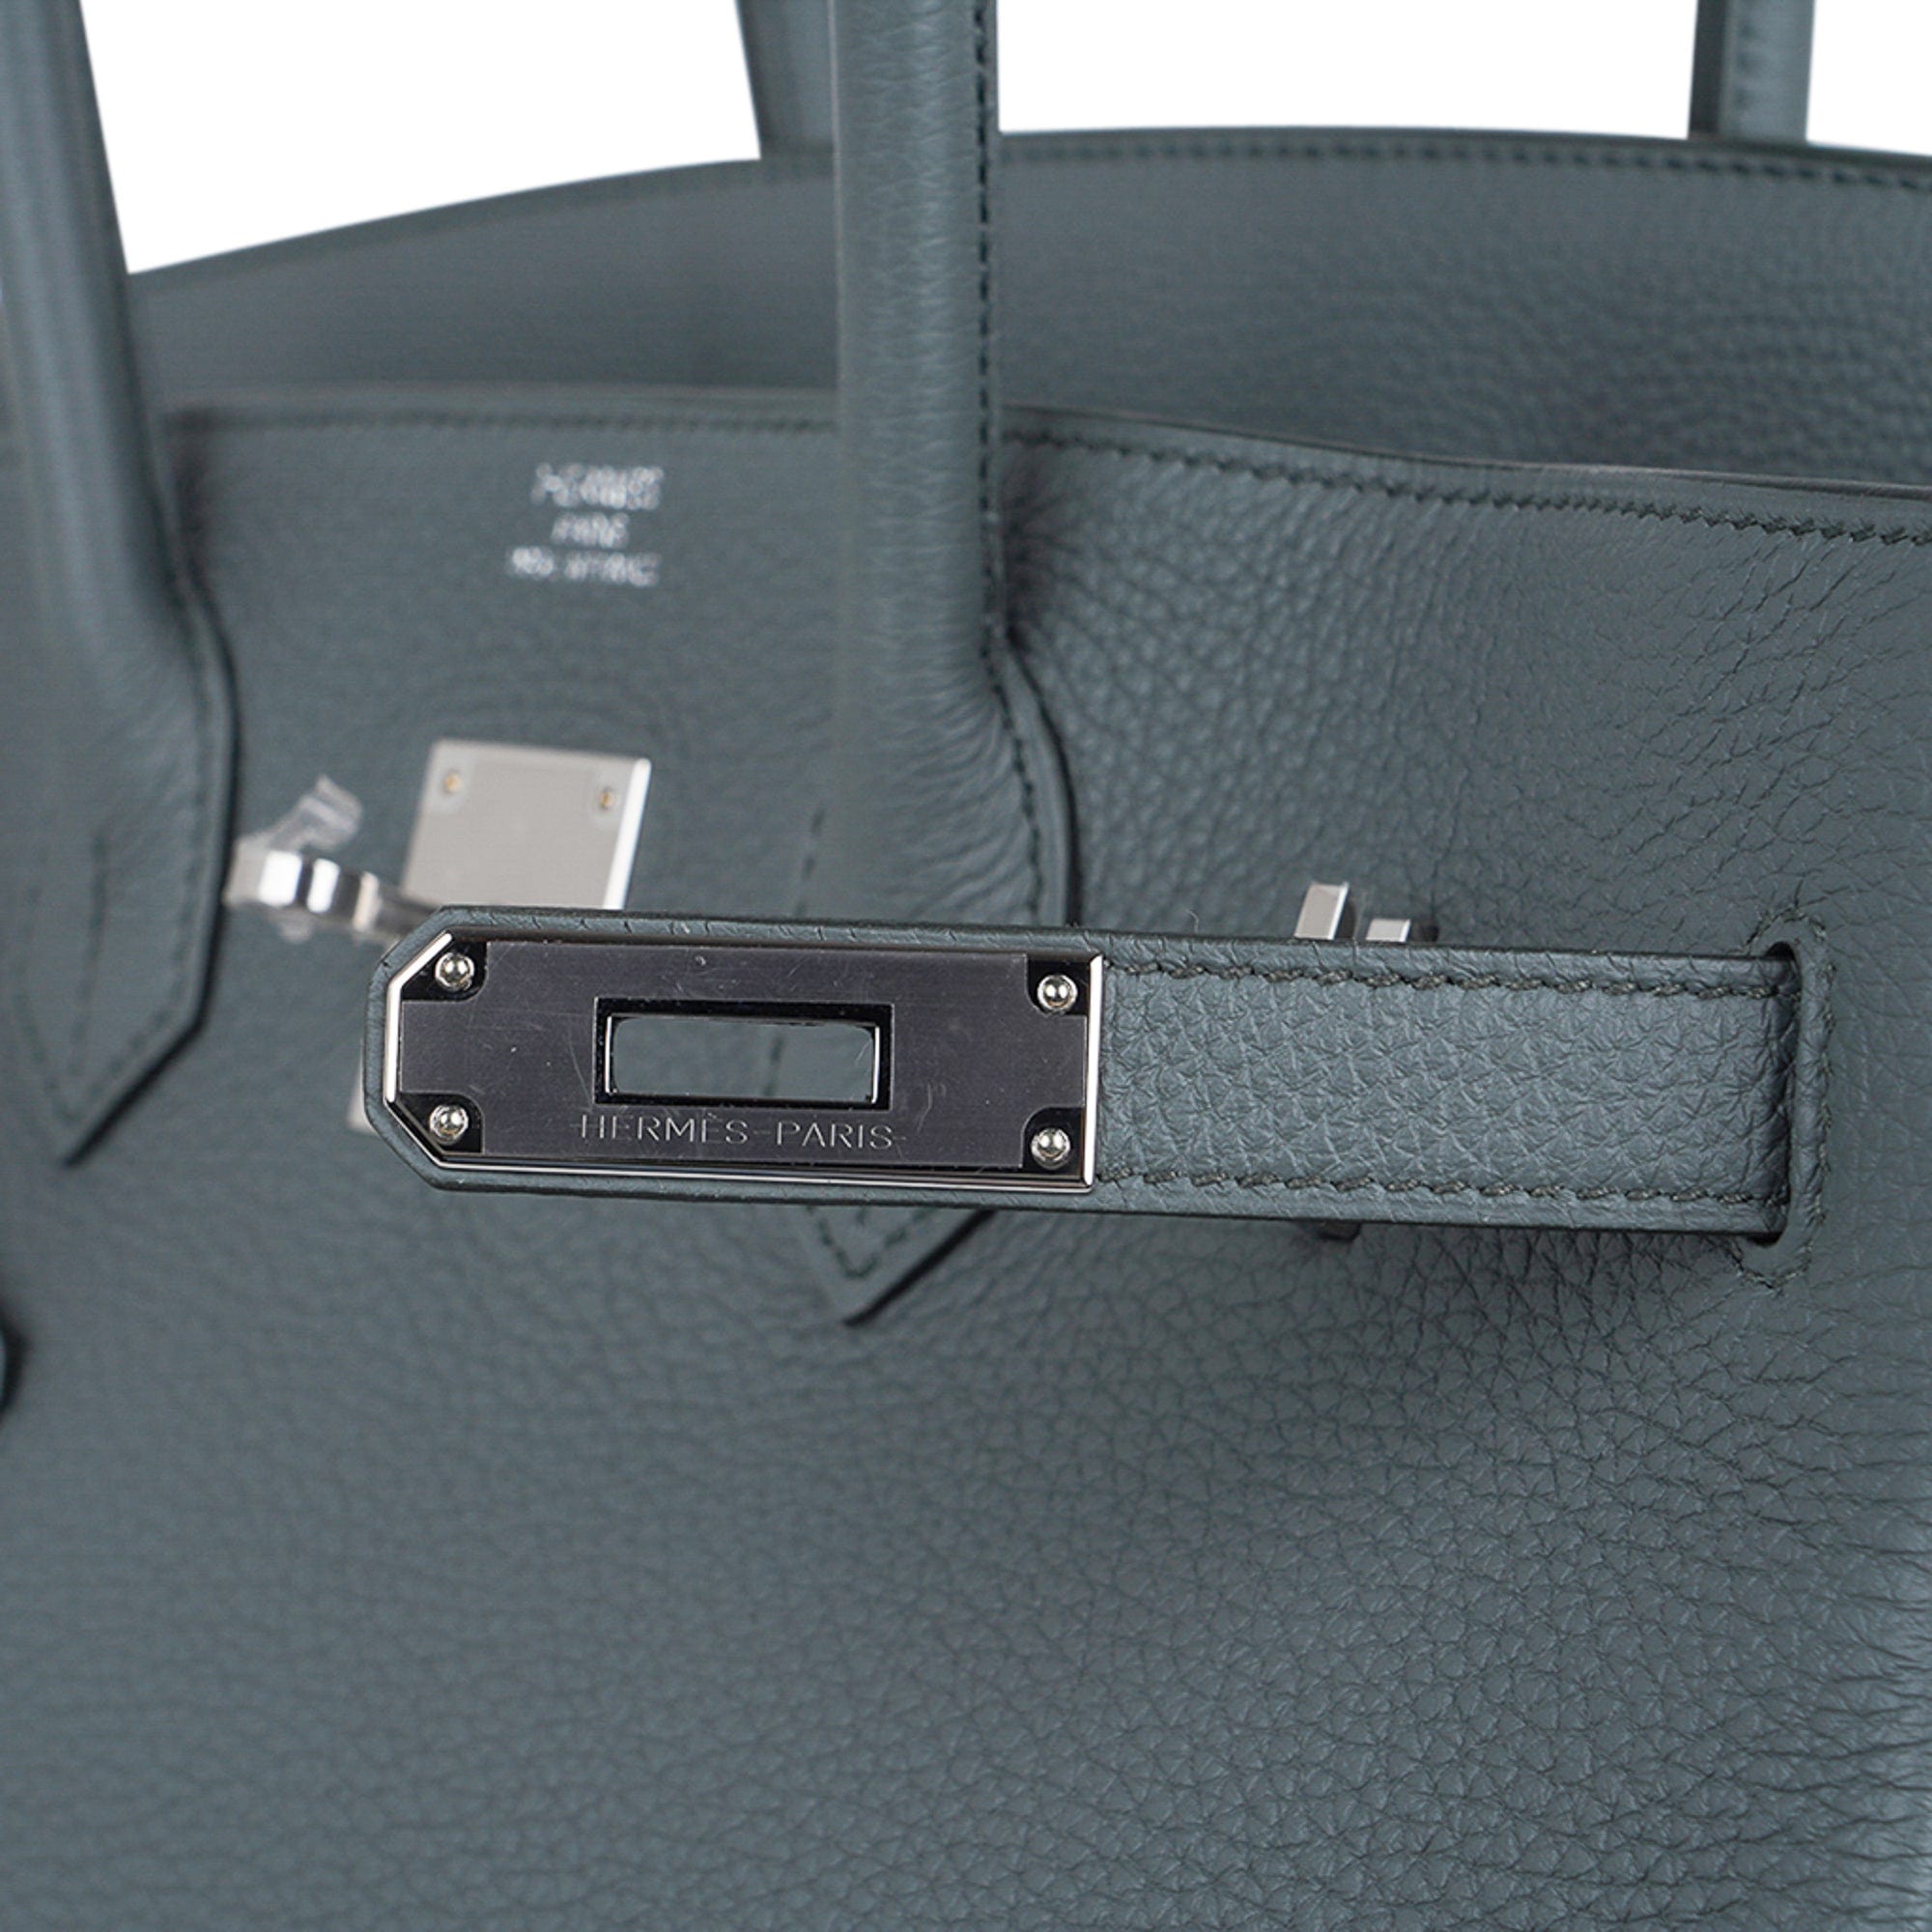 Hermes Birkin 35 Bag Vert Amande Togo Leather with Palladium Hardware